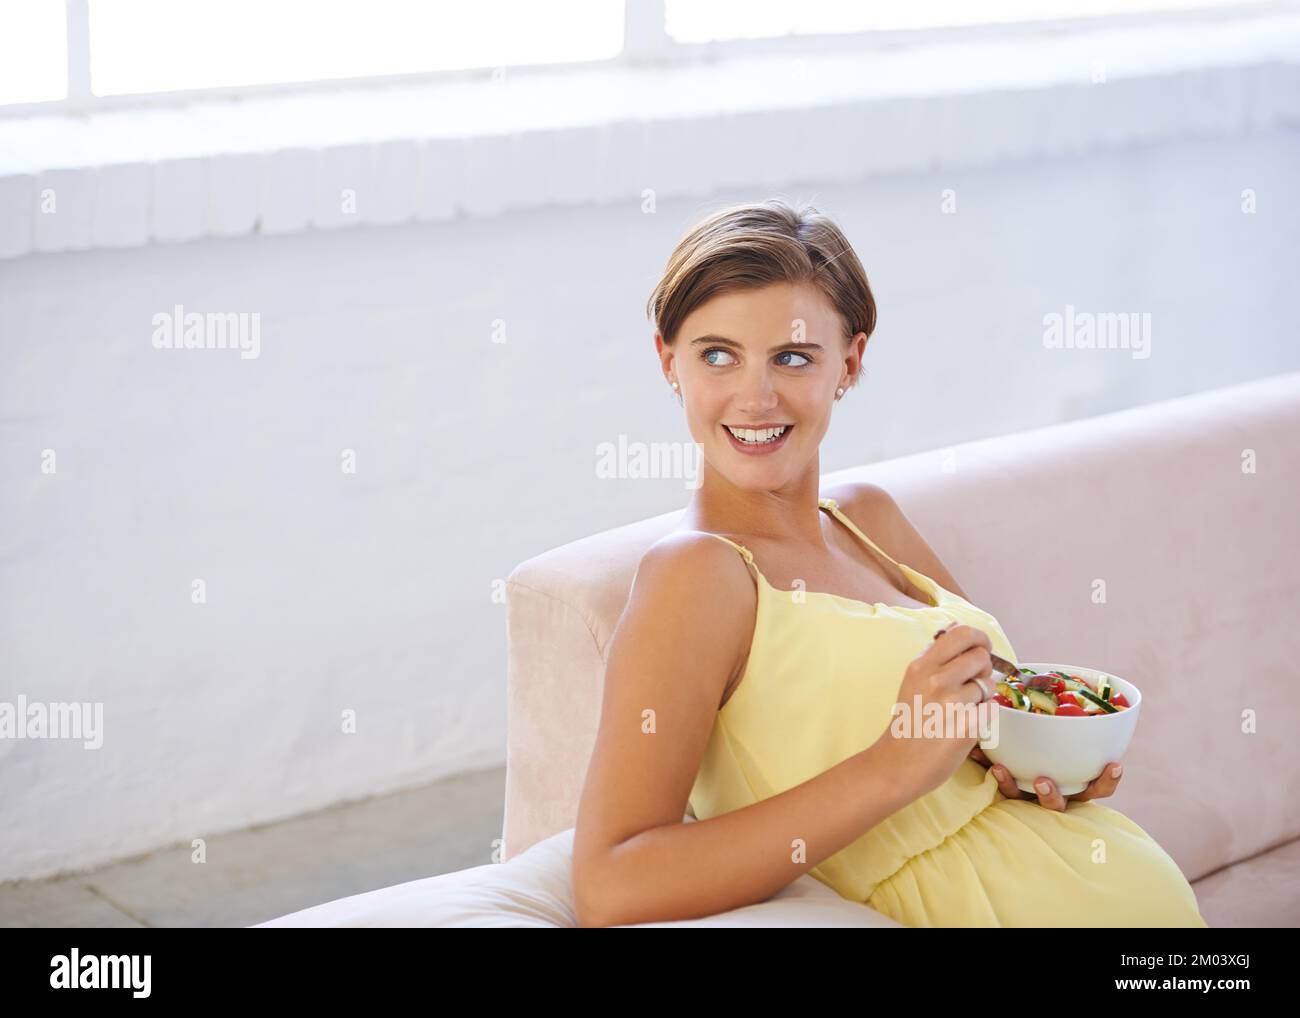 Rester en bonne santé, rester heureux. une belle femme enceinte se détendant sur le canapé tout en mangeant une salade fraîche. Banque D'Images